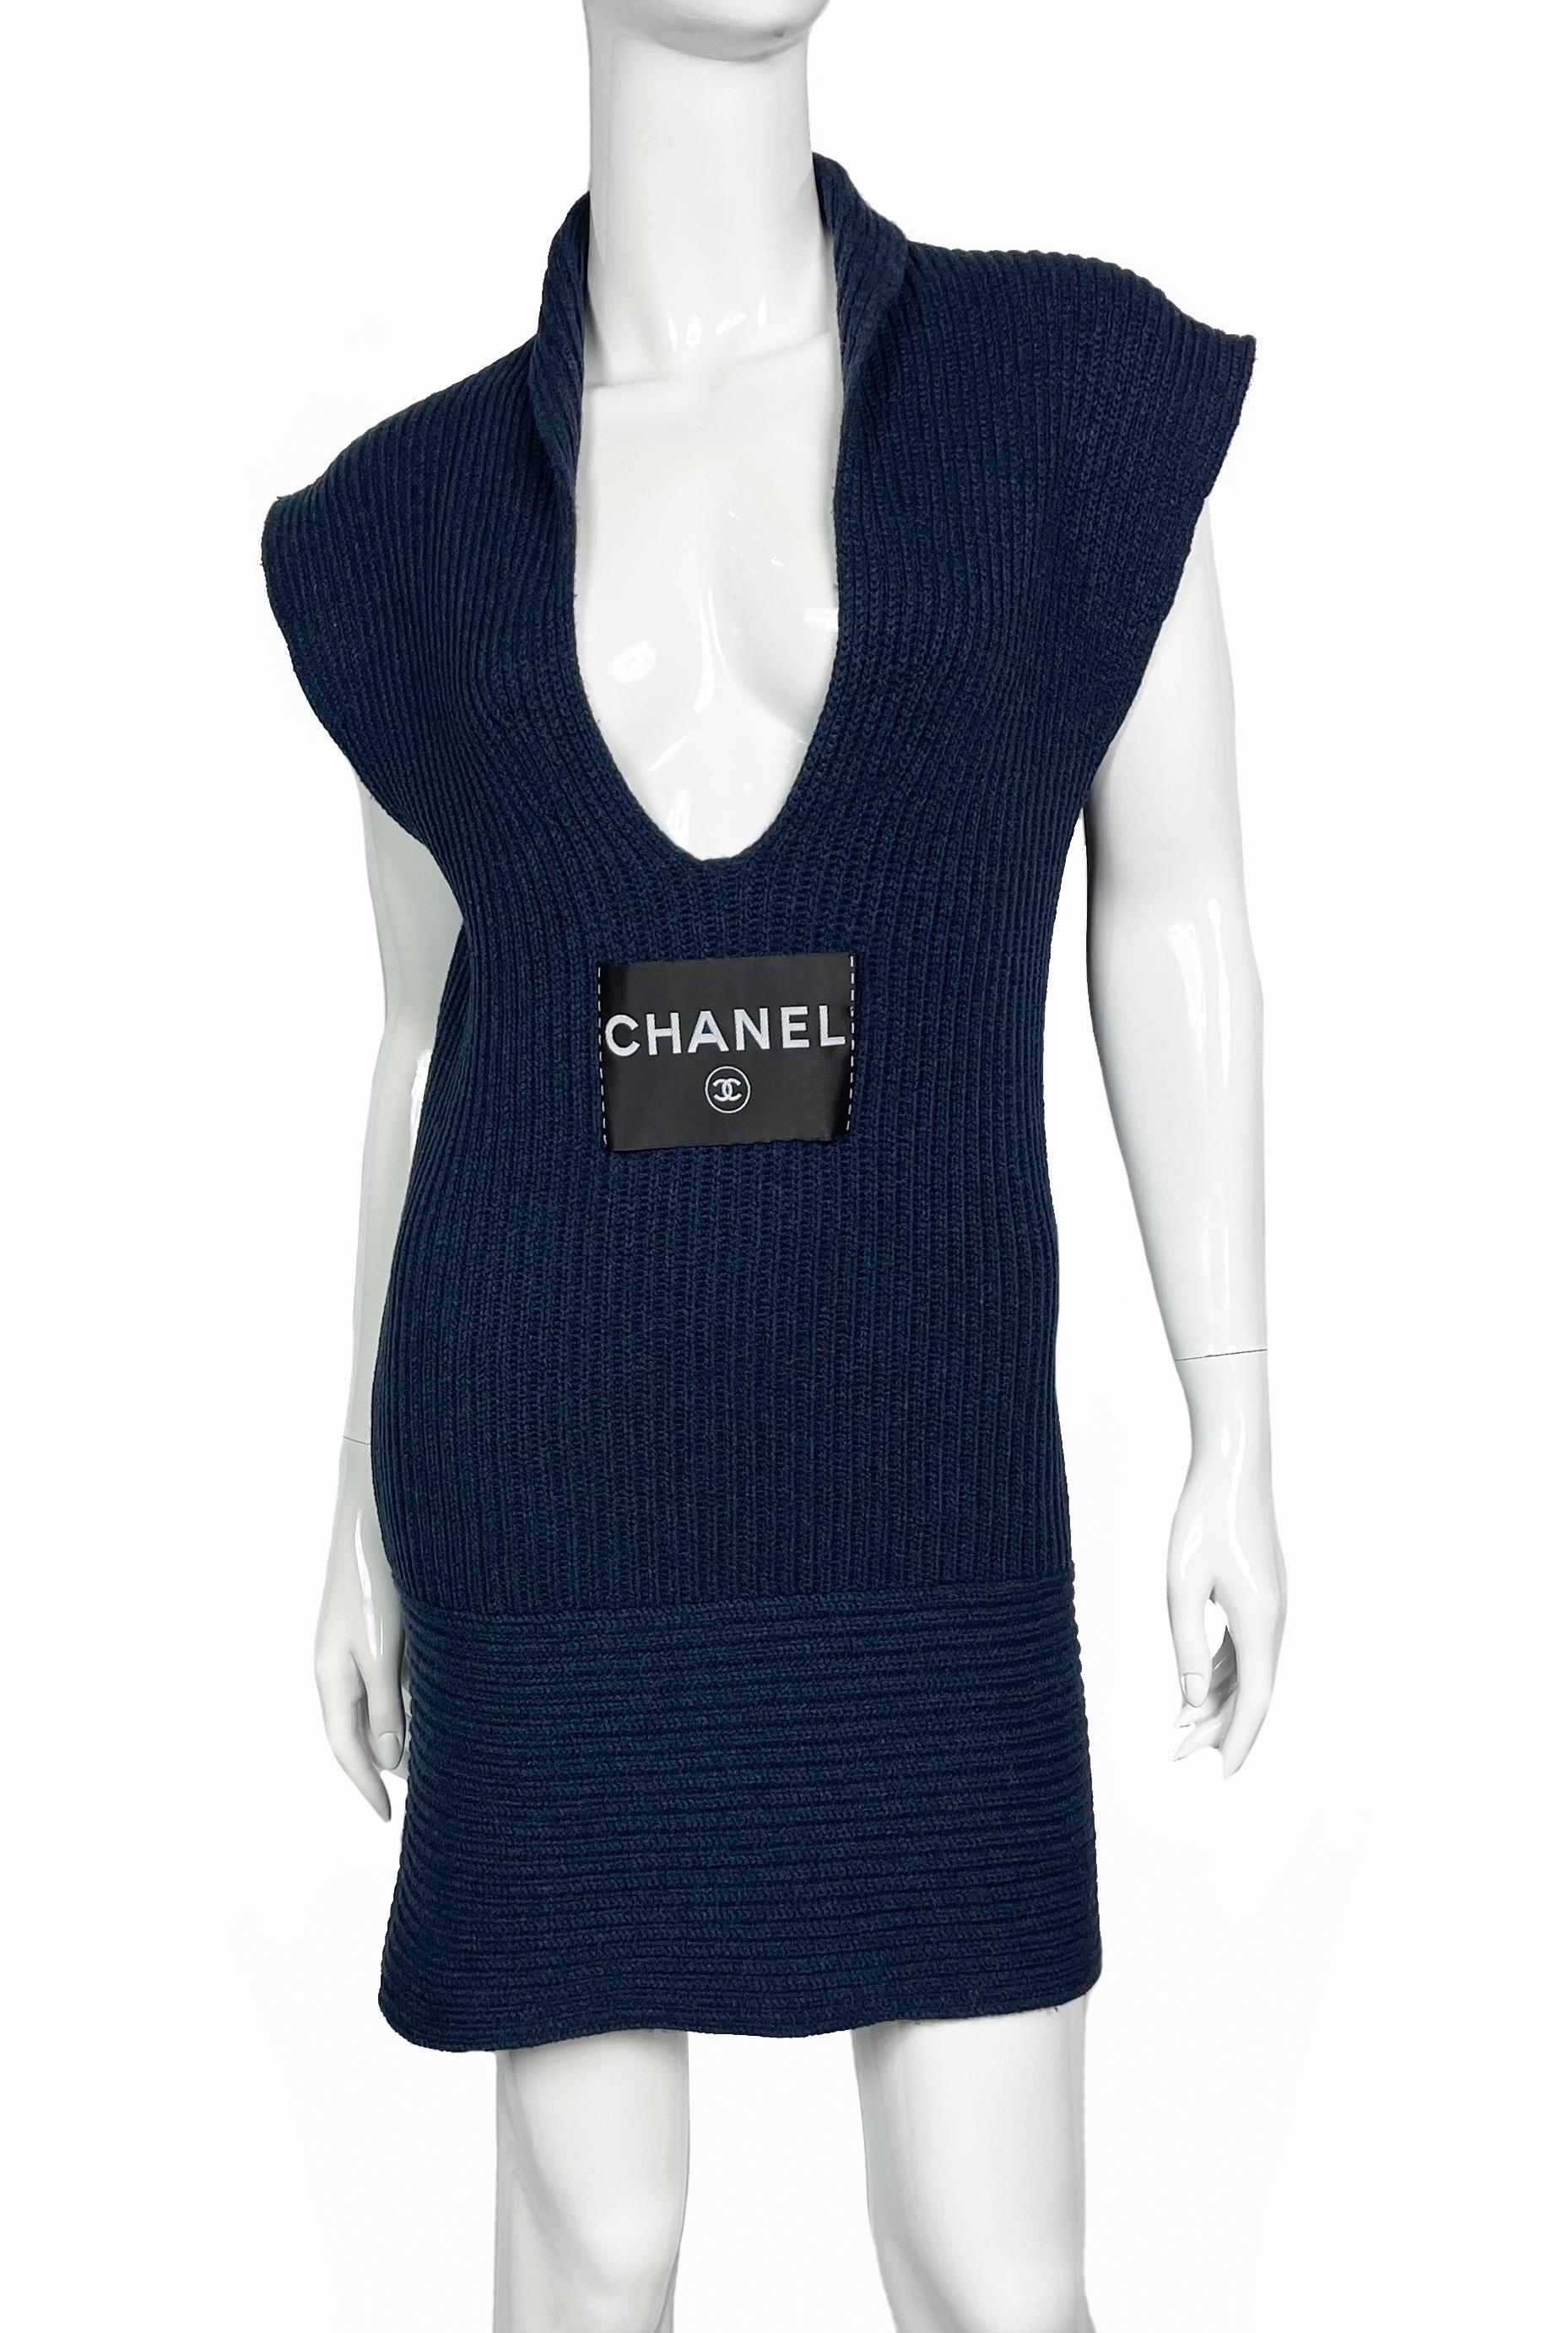 Robe bleu foncé en cachemire Chanel de la Collection Resort 2008 de Karl Lagerfeld. 
Robe sans manches avec décolleté en V plongeant. 
Étiquette Chanel et CC Logo sur le devant. 
Taille - FR36/S
Composition : 100% cachemire
Condit : très bien.